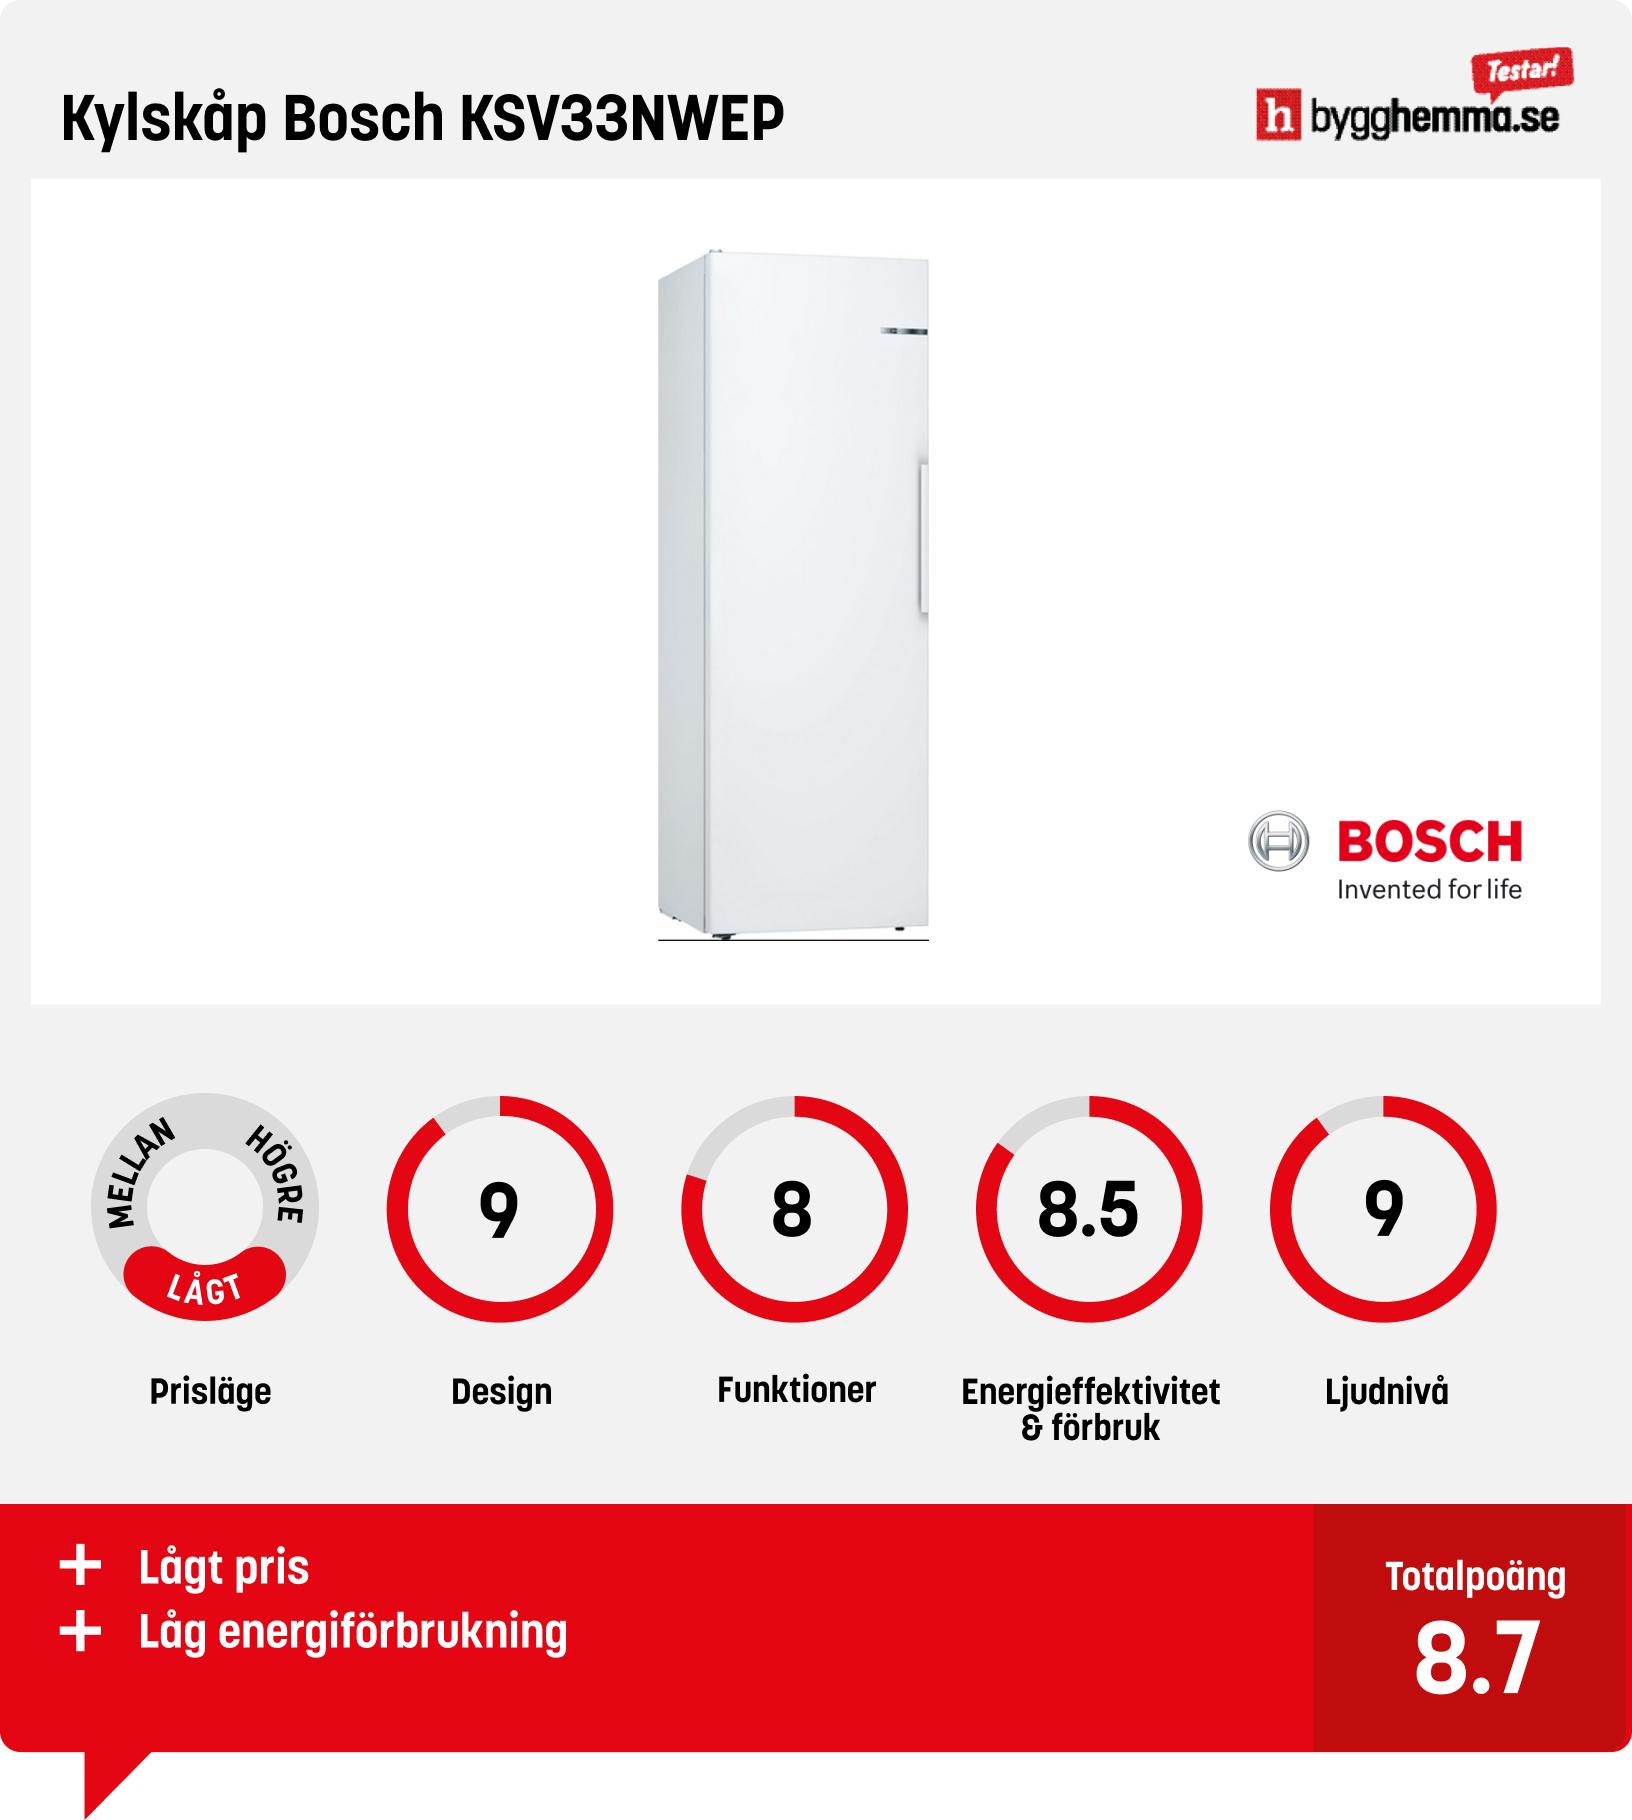 Kylskåp bäst i test - Kylskåp Bosch KSV33NWEP